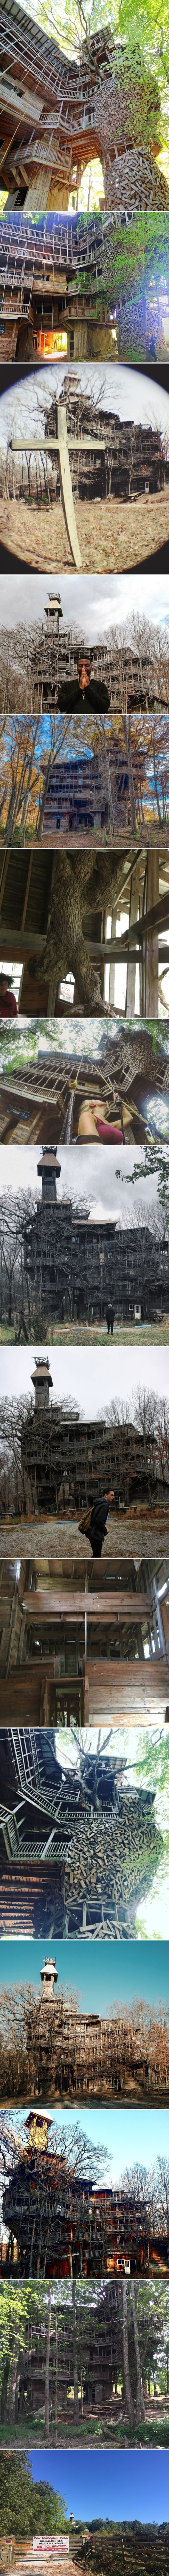 U šumi su naišli na misterioznu kuću na drvetu s 80 soba raspoređenih na više katova